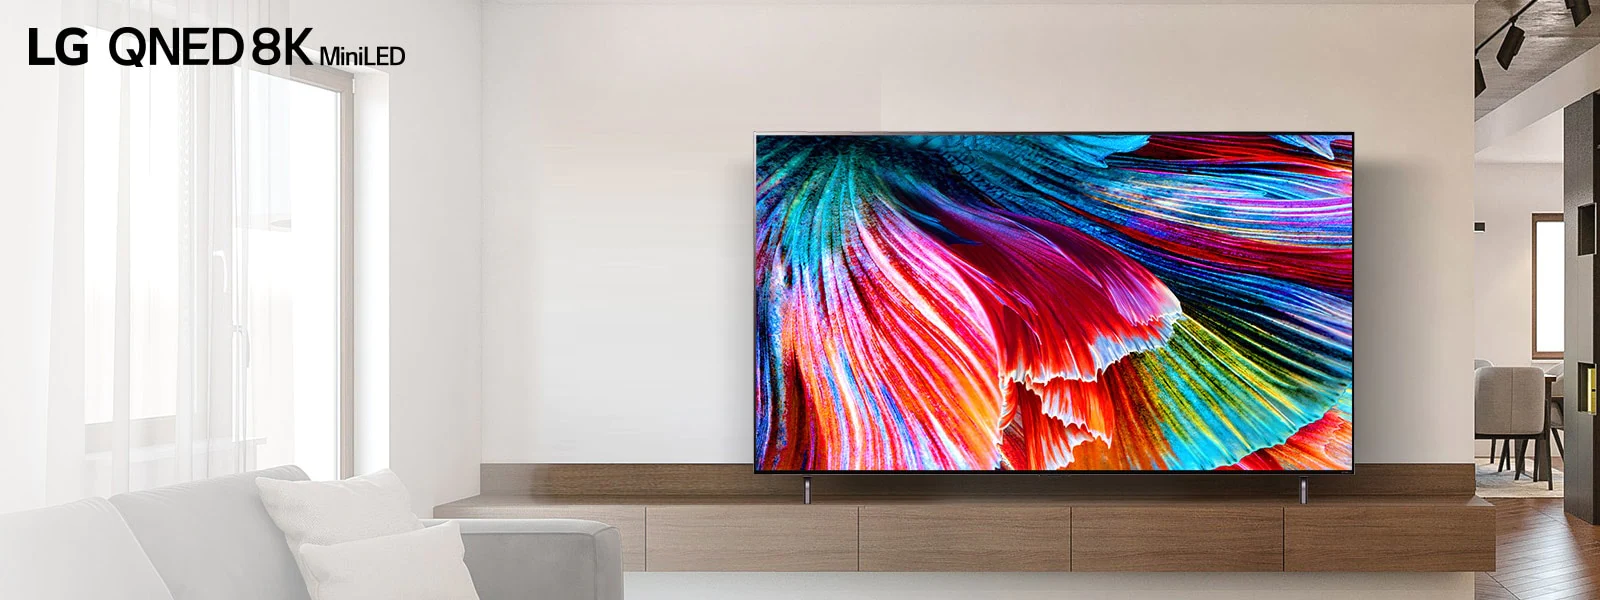 يقف تلفزيون QNED MiniLED على خزانة خشبية مقابل الجدار الخفيف في تصميم داخلي حديث فاتح. تعرض الشاشة صورة مقربة لبتلات متعددة الألوان تتصاعد.